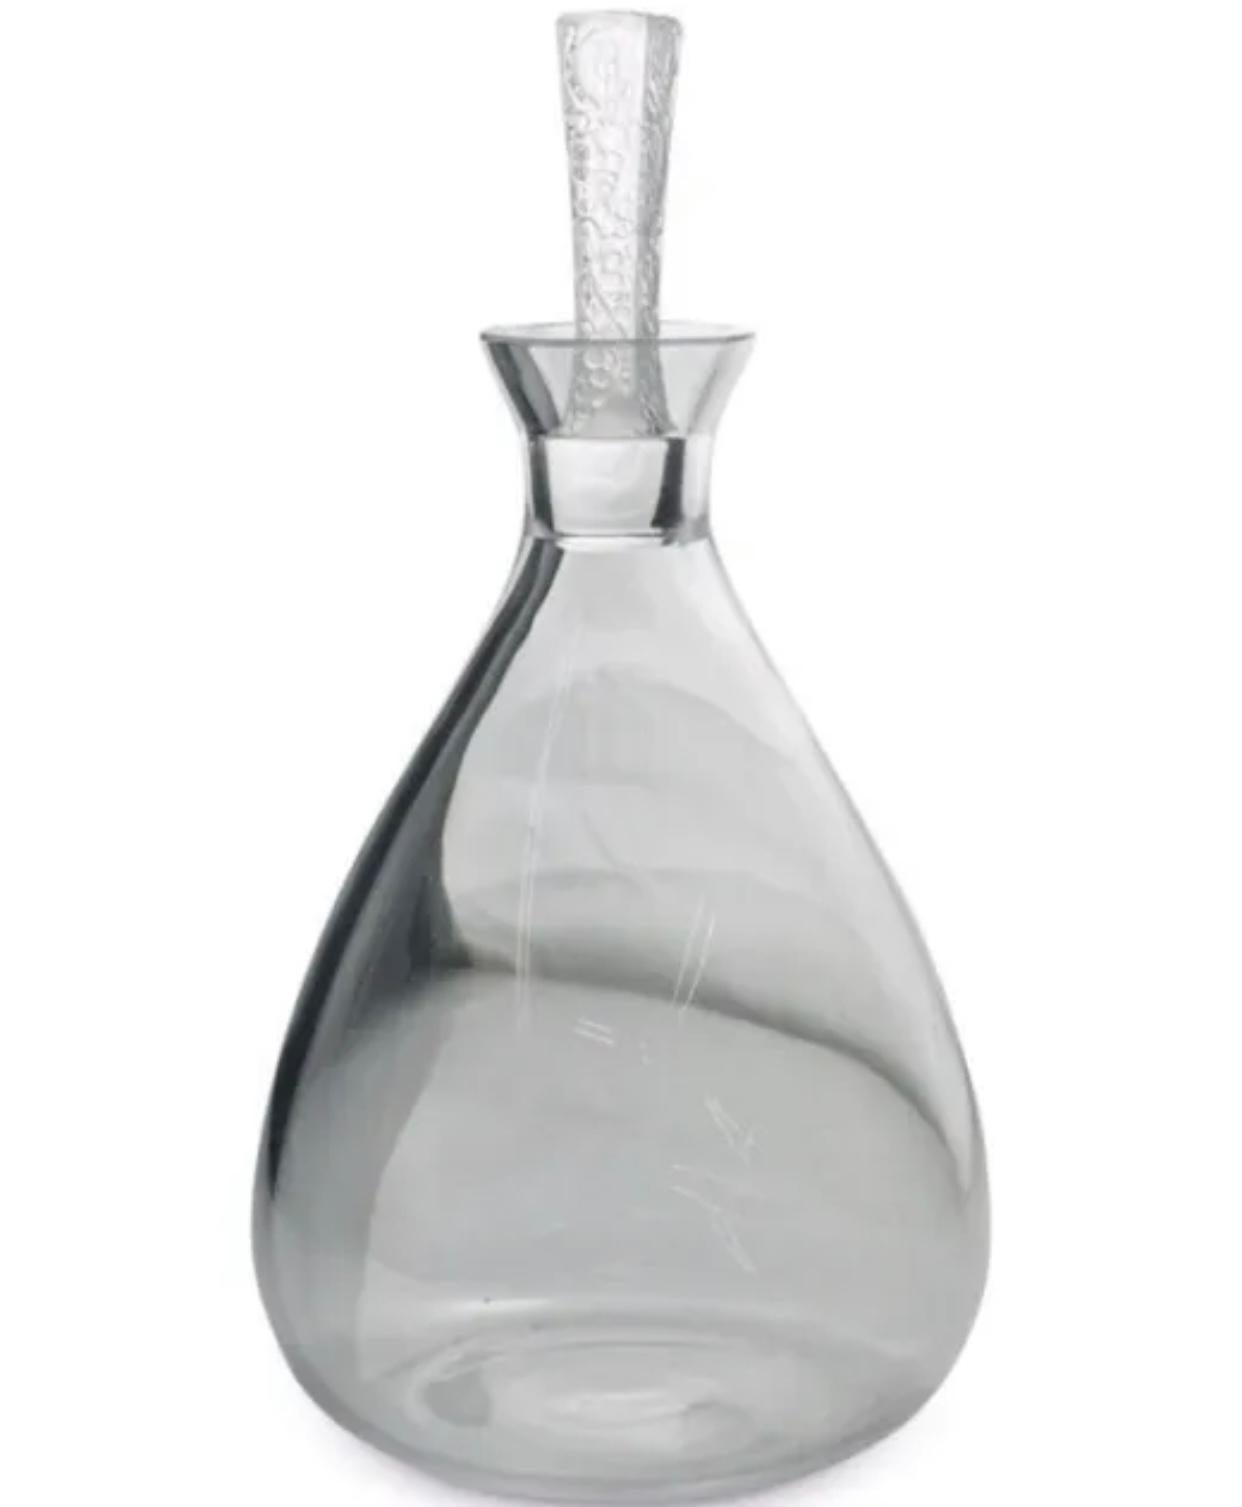 Ensemble de verres à pied en cristal Lalique comprenant une carafe avec un bouchon dans le motif 